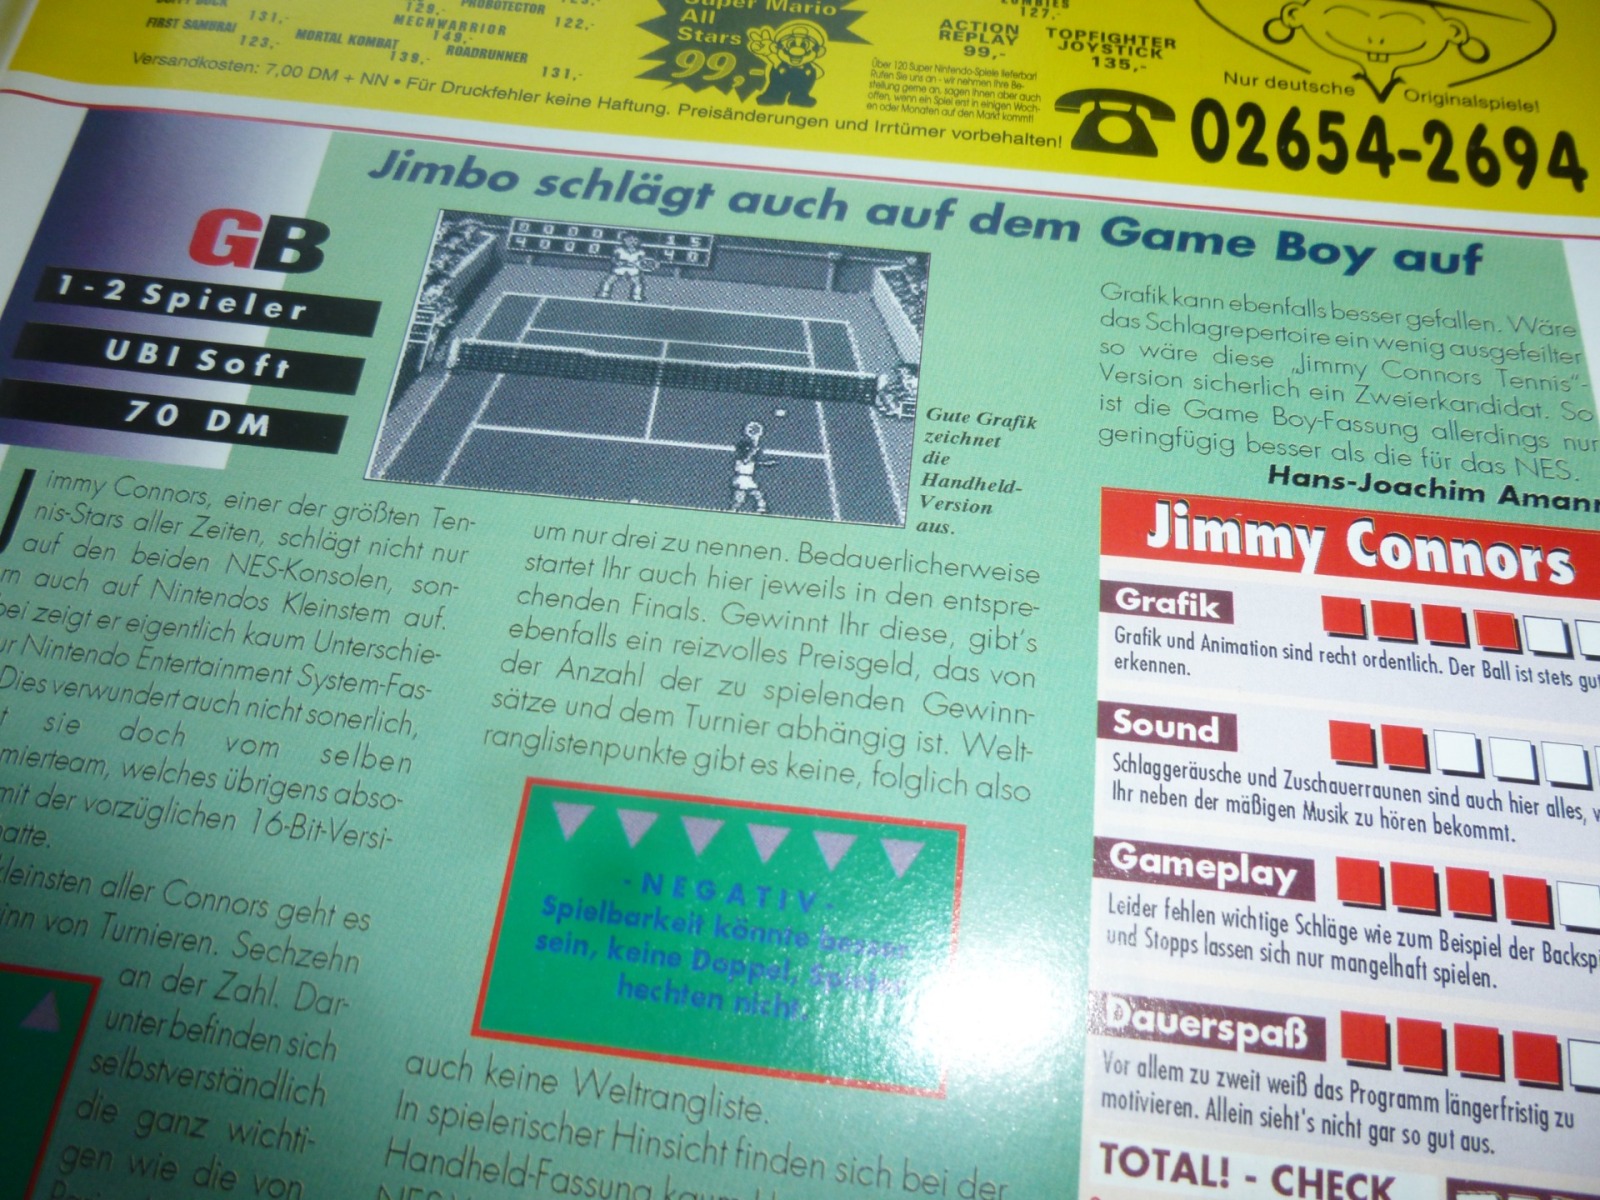 TOTAL Das unabhängige Magazin - 100 Nintendo - Ausgabe 12/93 1993 10